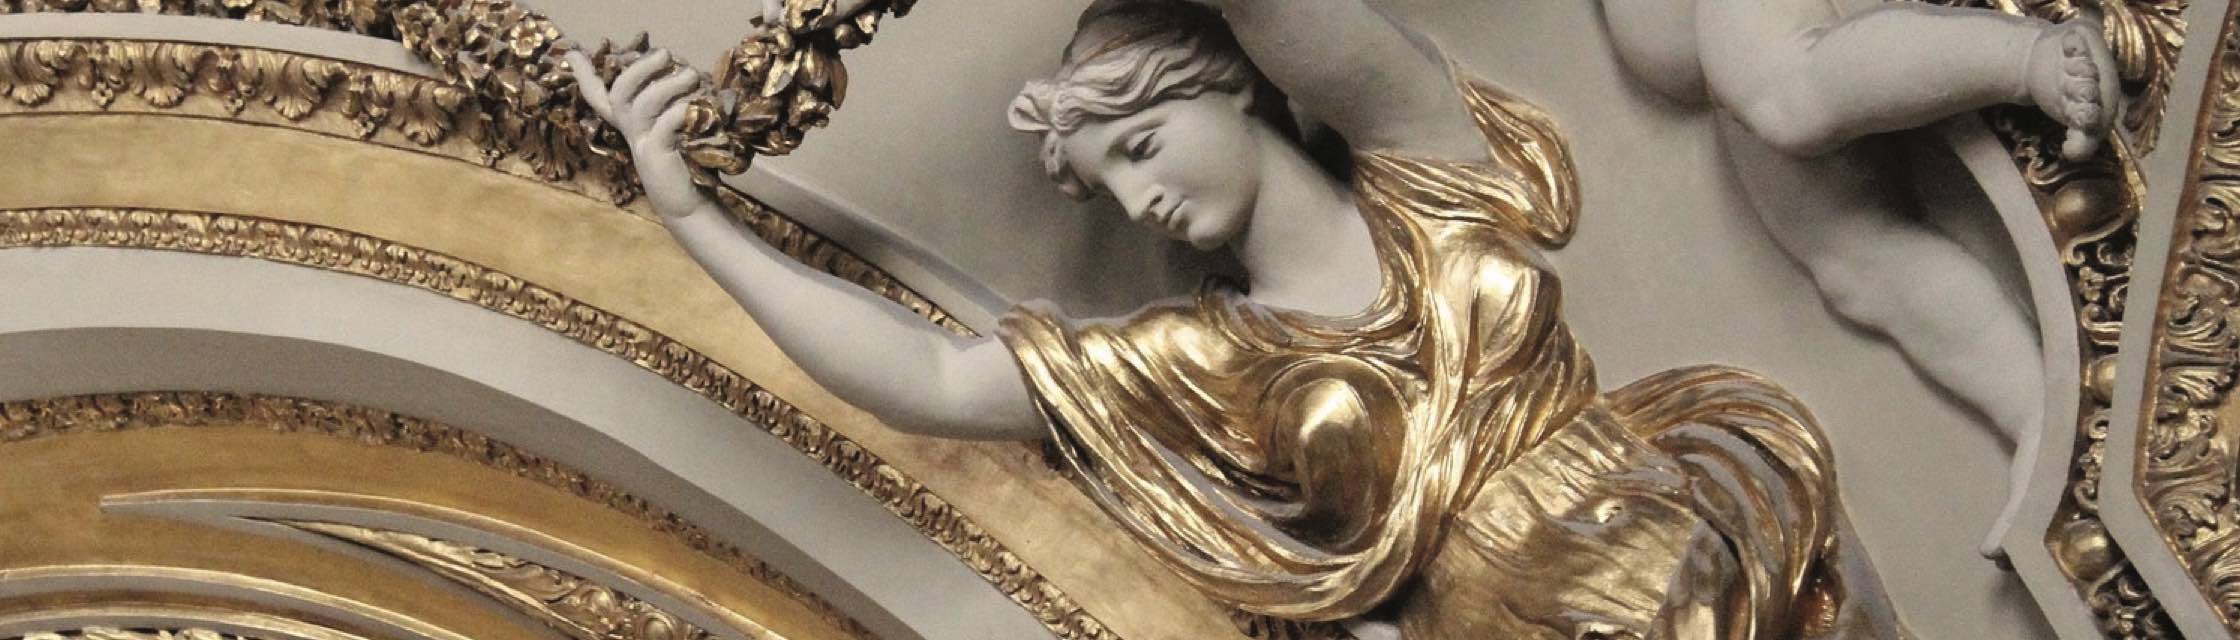 An ornate sculpture of a woman.